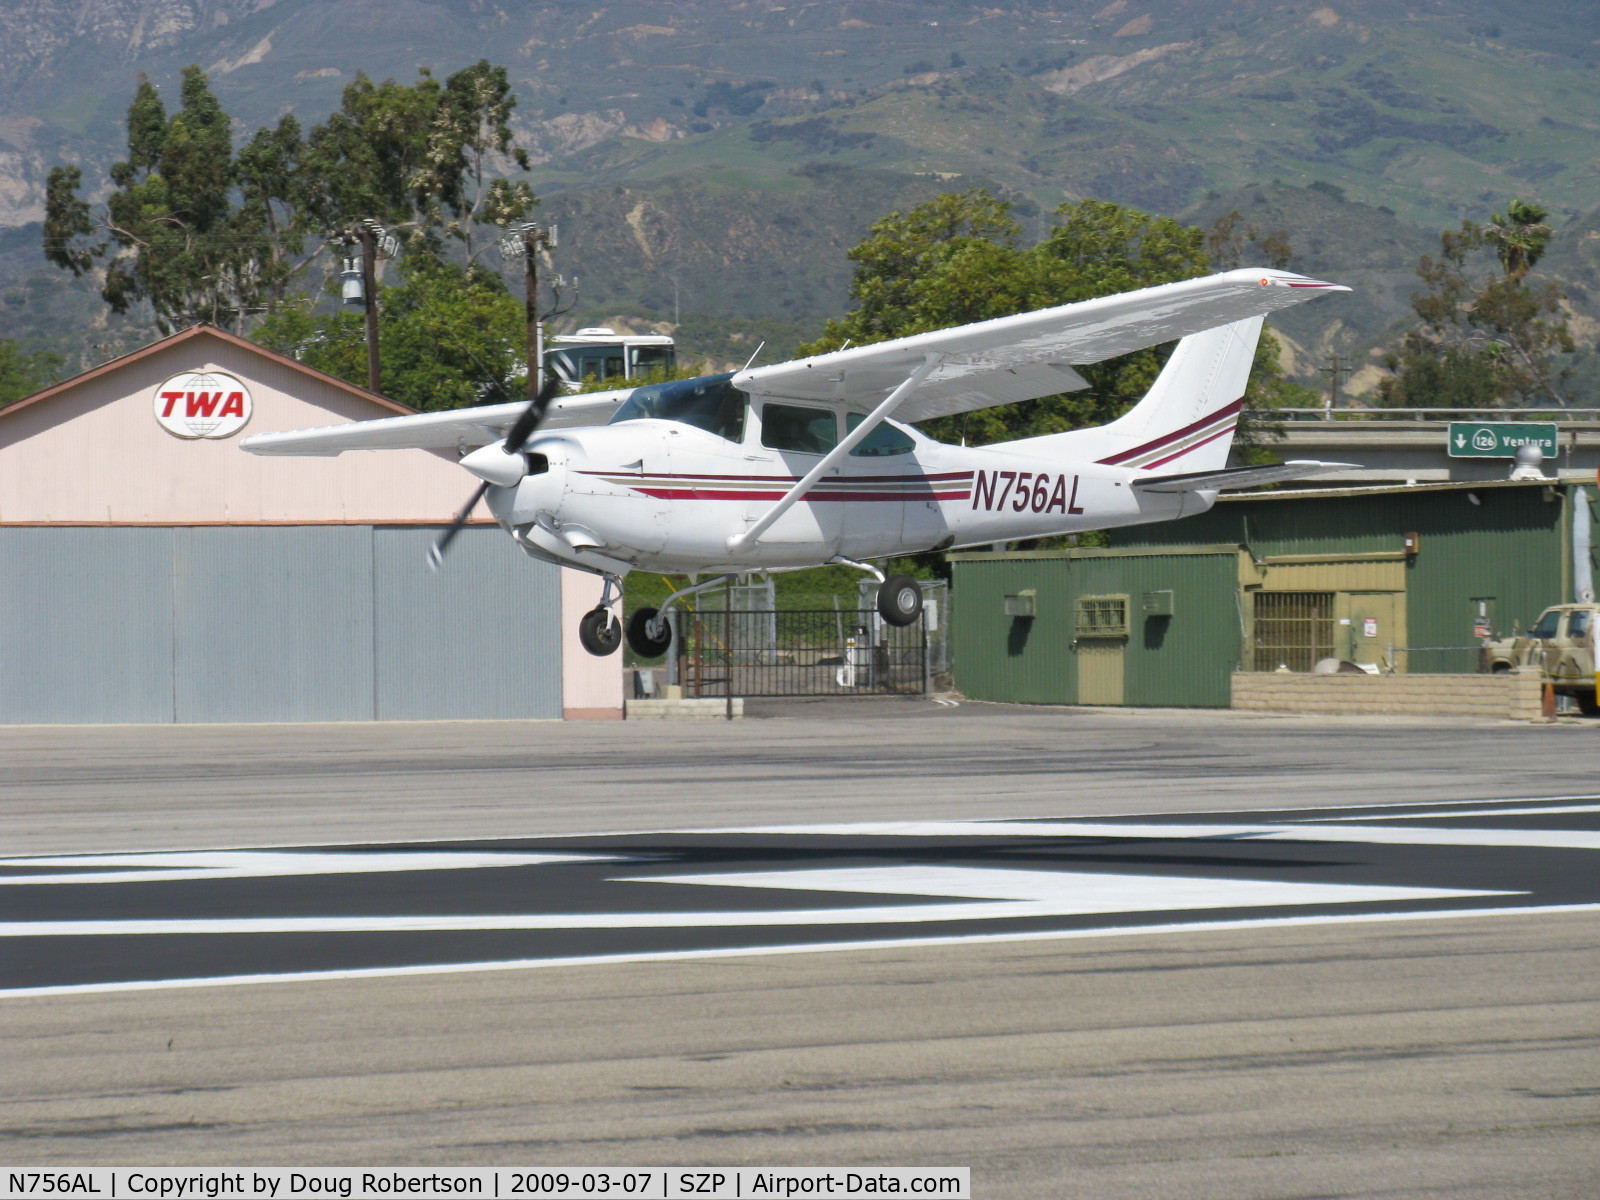 N756AL, 1979 Cessna TR182 Turbo Skylane RG C/N R18201023, 1979 Cessna TR182 SKYLANE RG, Lycoming O-540-J3C5D 235 Hp, landing Rwy 22